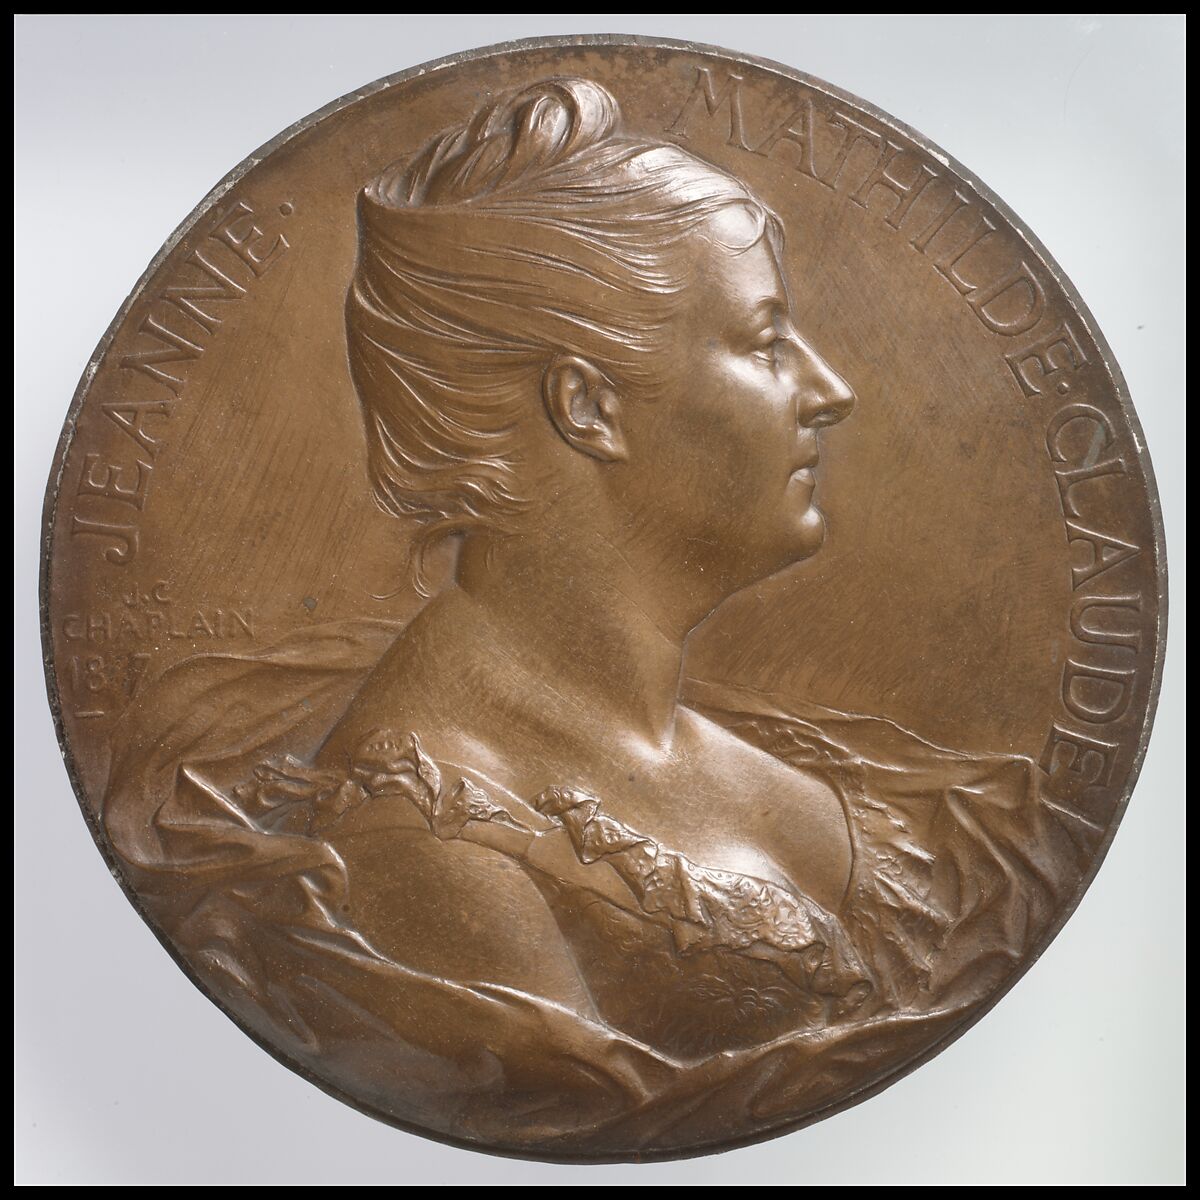 Madame Jeanne-Mathilde Claude, Medalist: Jules-Clément Chaplain (French, Mortagne, Orne 1839–1909 Paris), Electroformed copper, French, Paris 